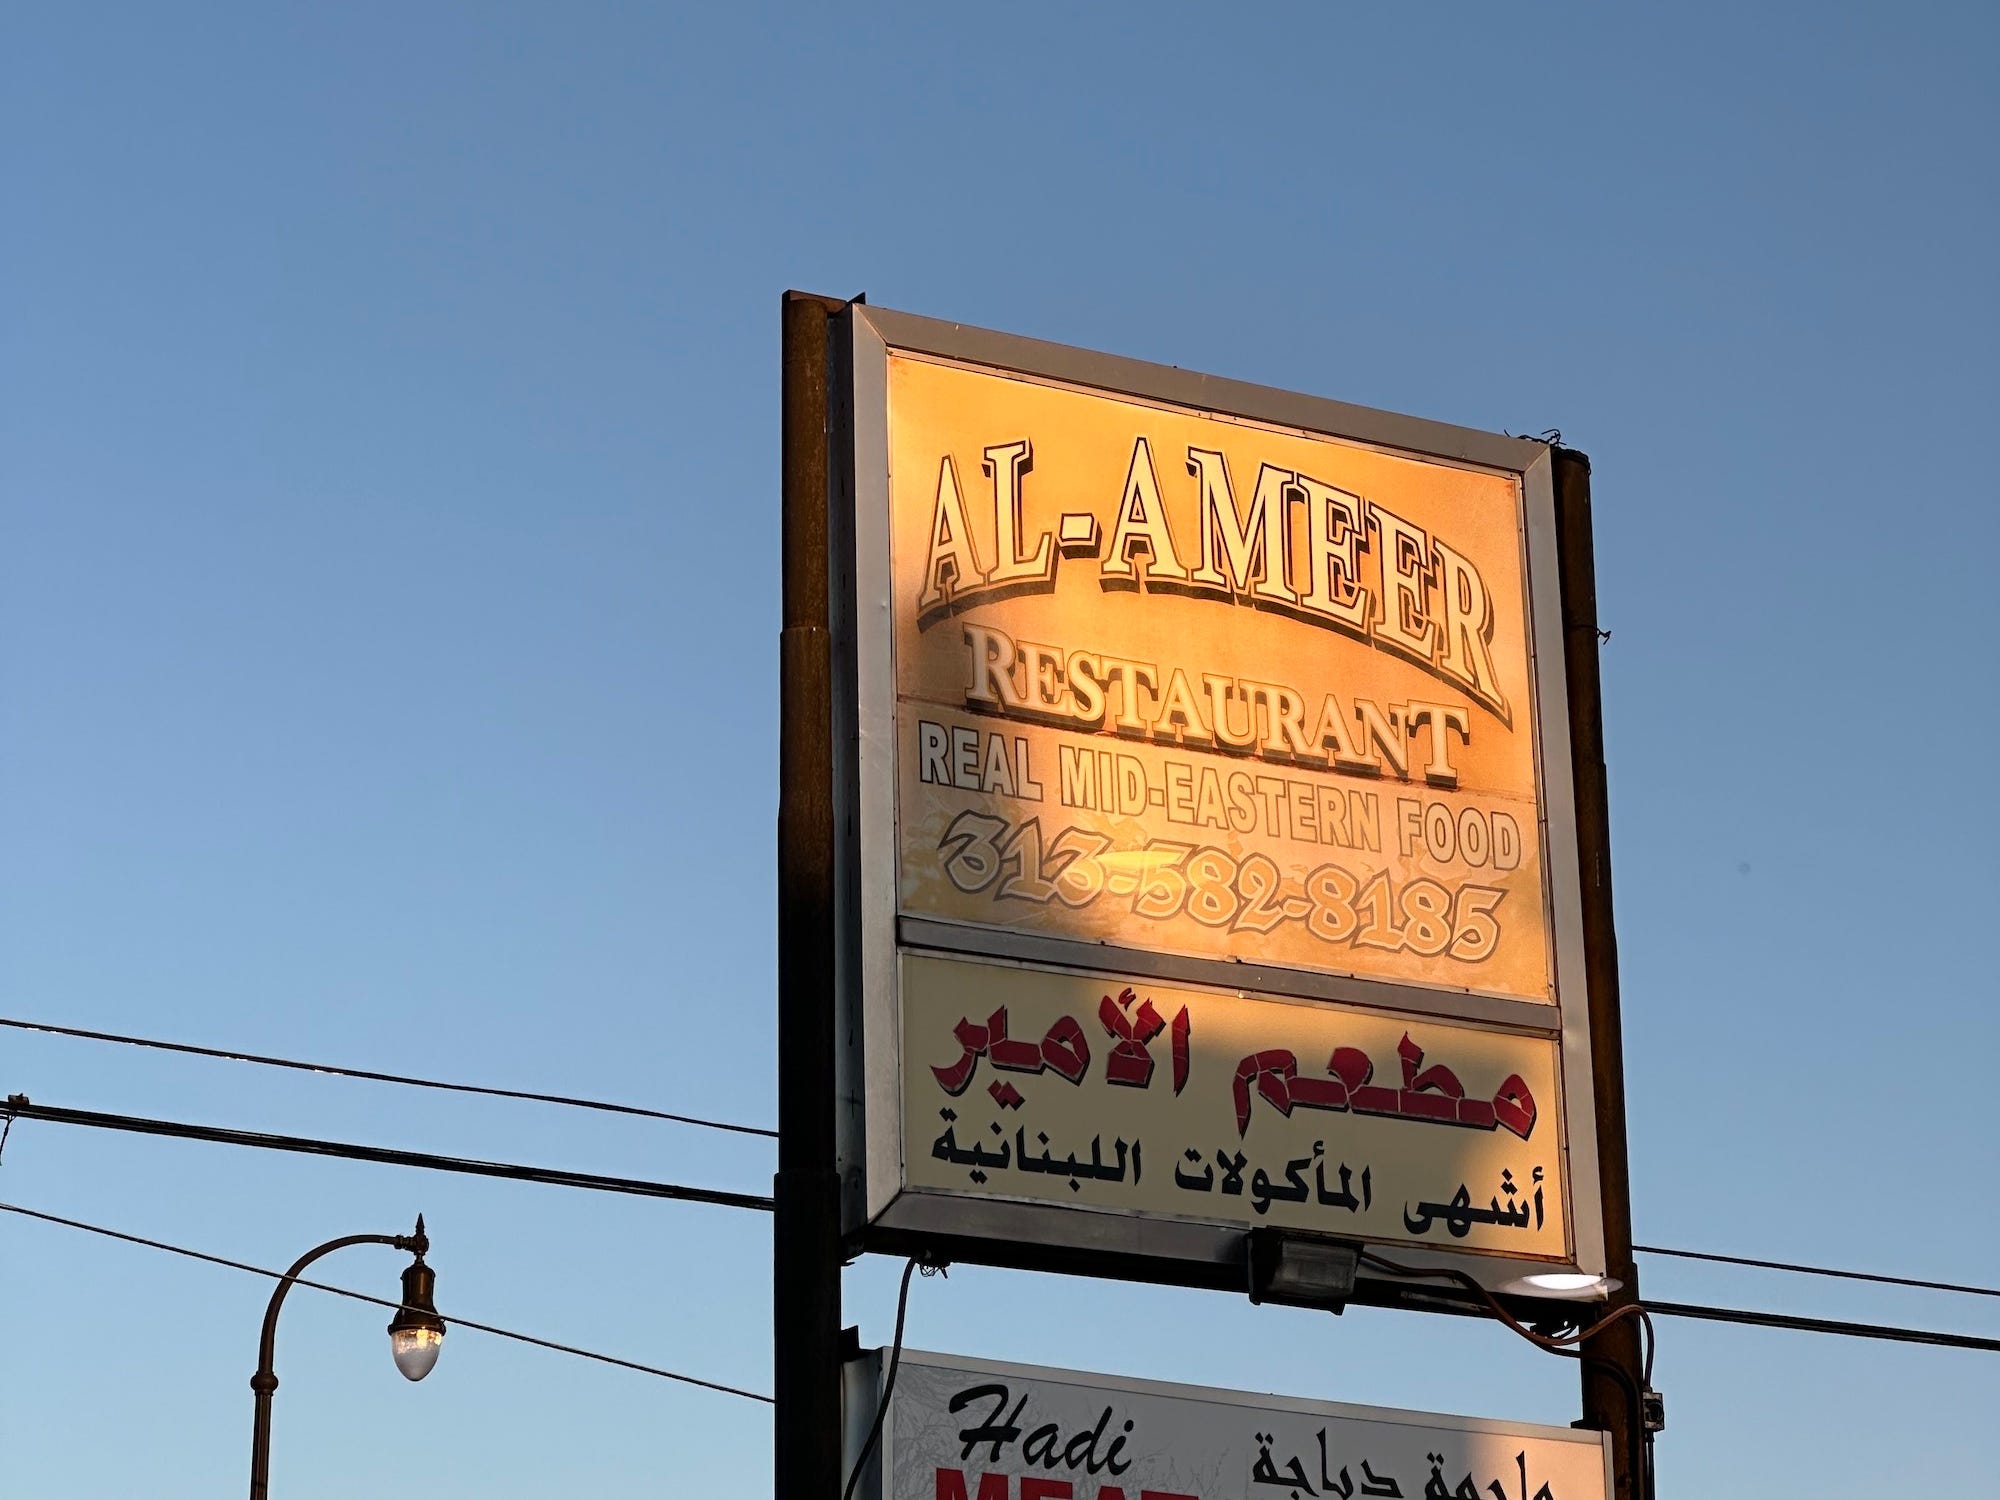 Viele Geschäfte und Restaurants in Dearborn werben neben Englisch auch auf Arabisch.